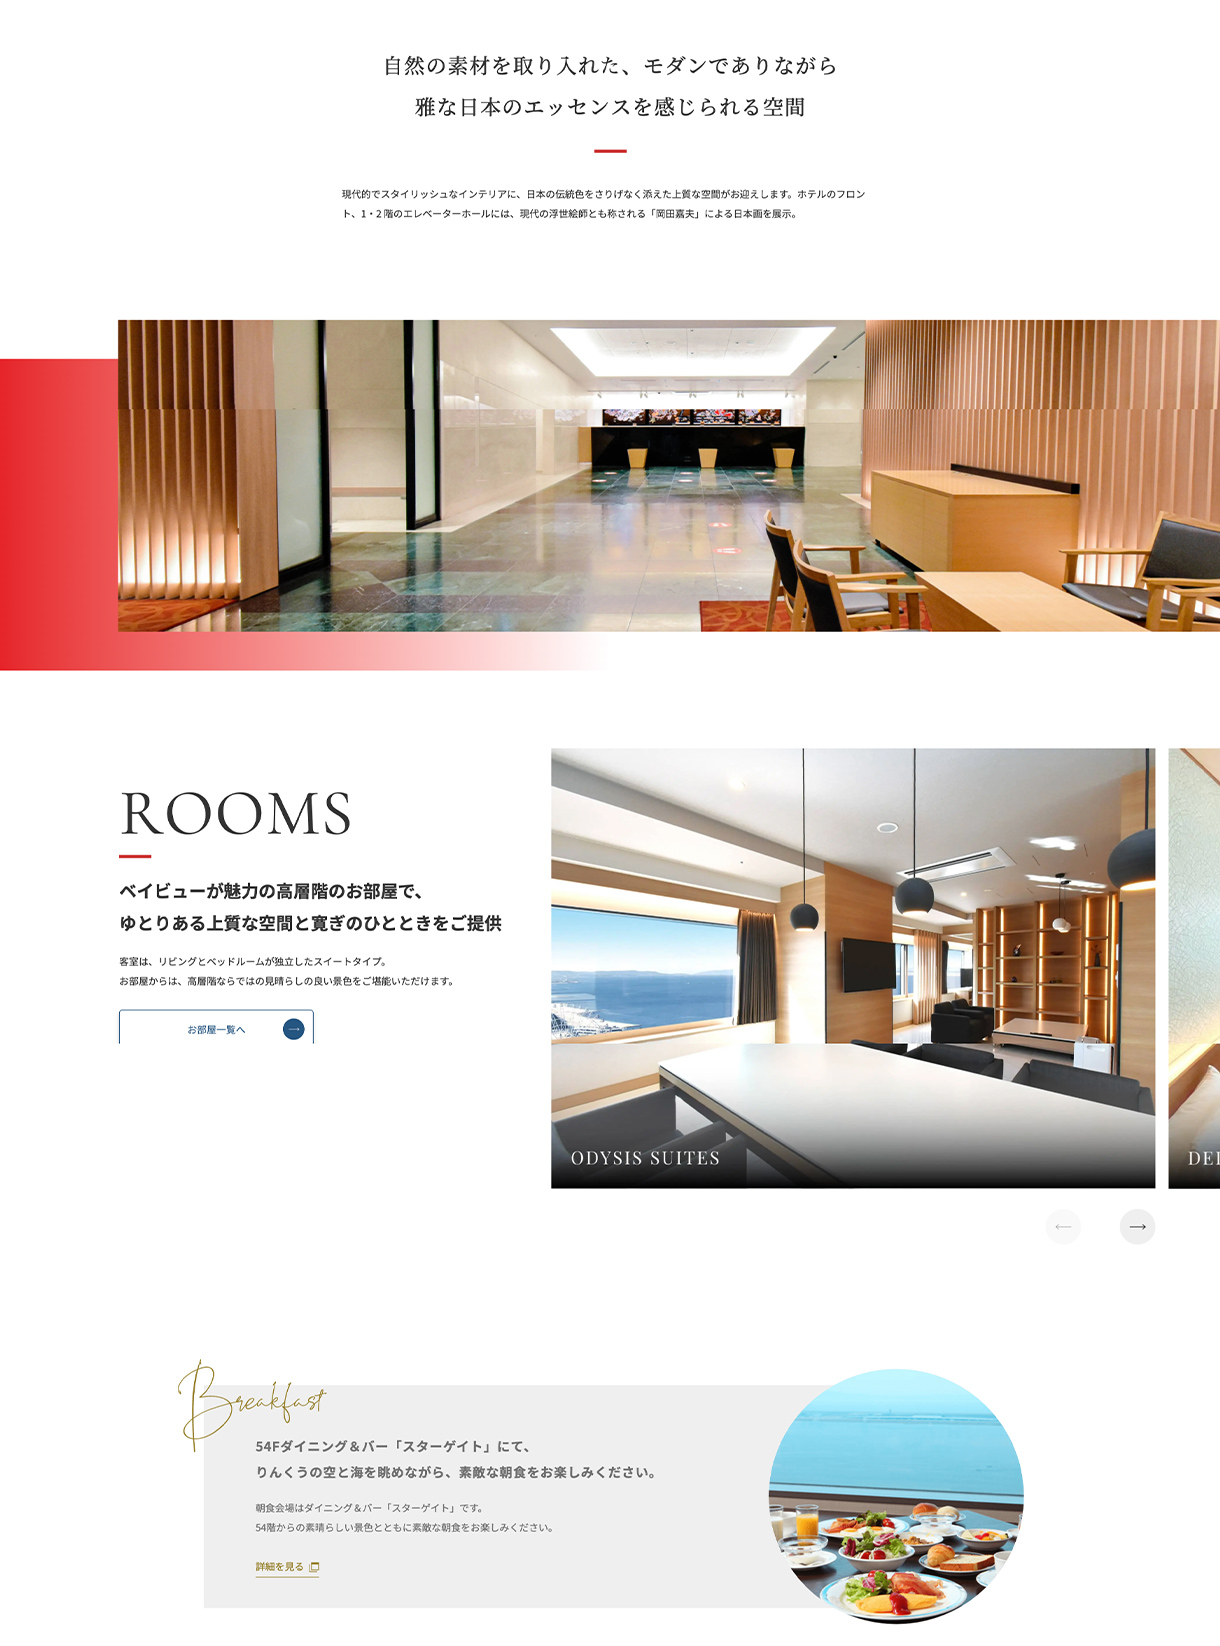 オディシススイーツ大阪エアポートホテルwebサイトのTOPページ画像